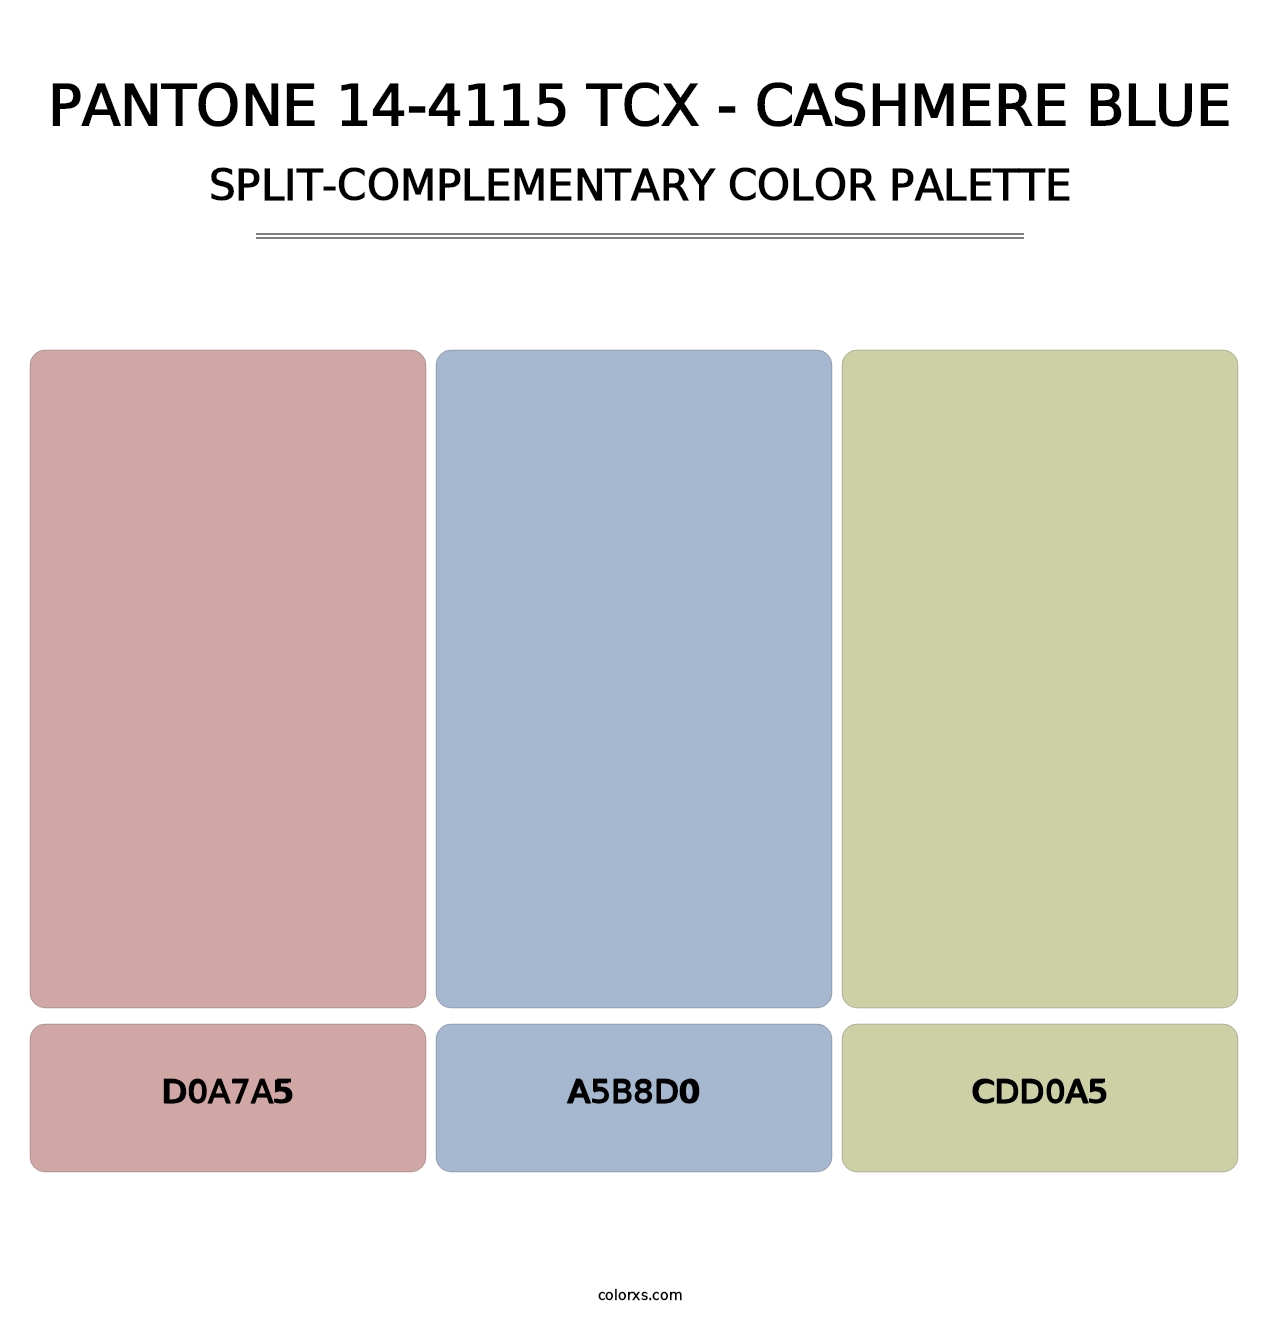 PANTONE 14-4115 TCX - Cashmere Blue - Split-Complementary Color Palette